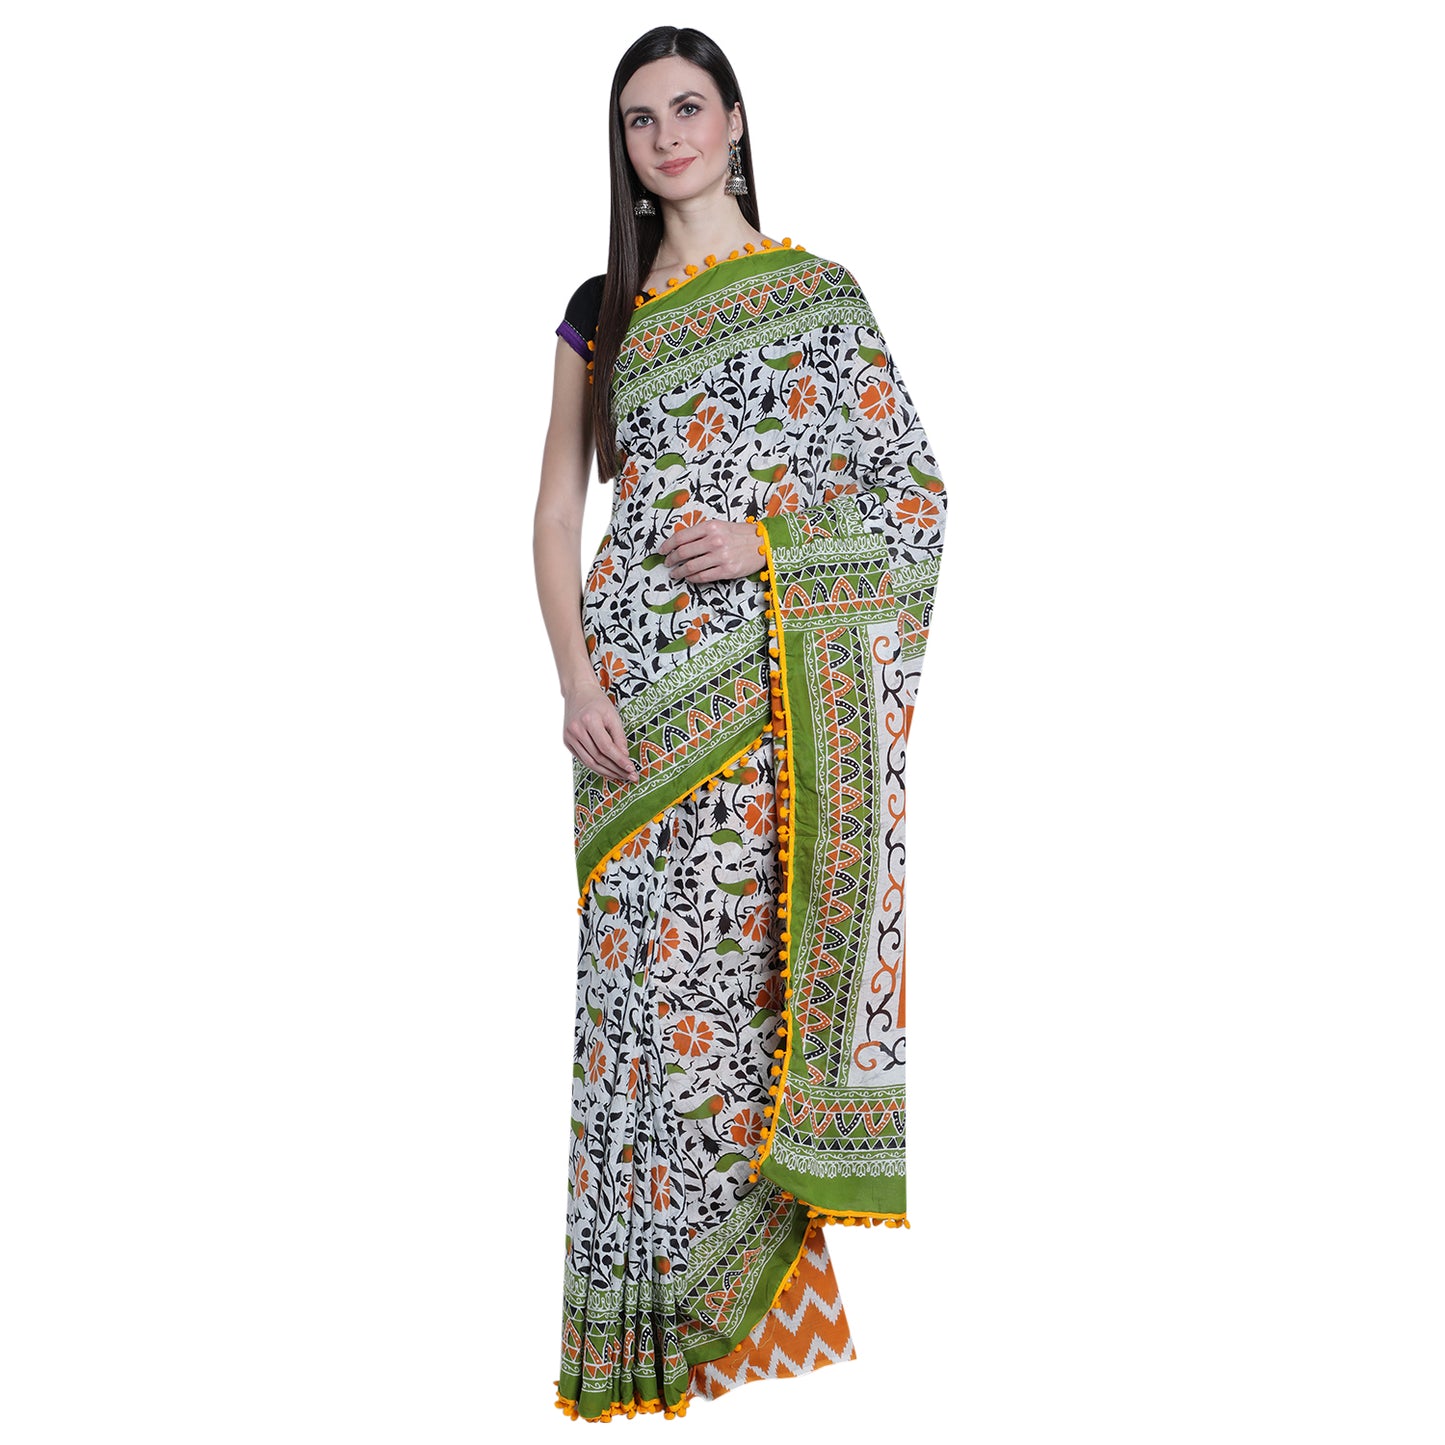 Jaipuri Splendor: Vibrant Cotton Saree with Exquisite Prints